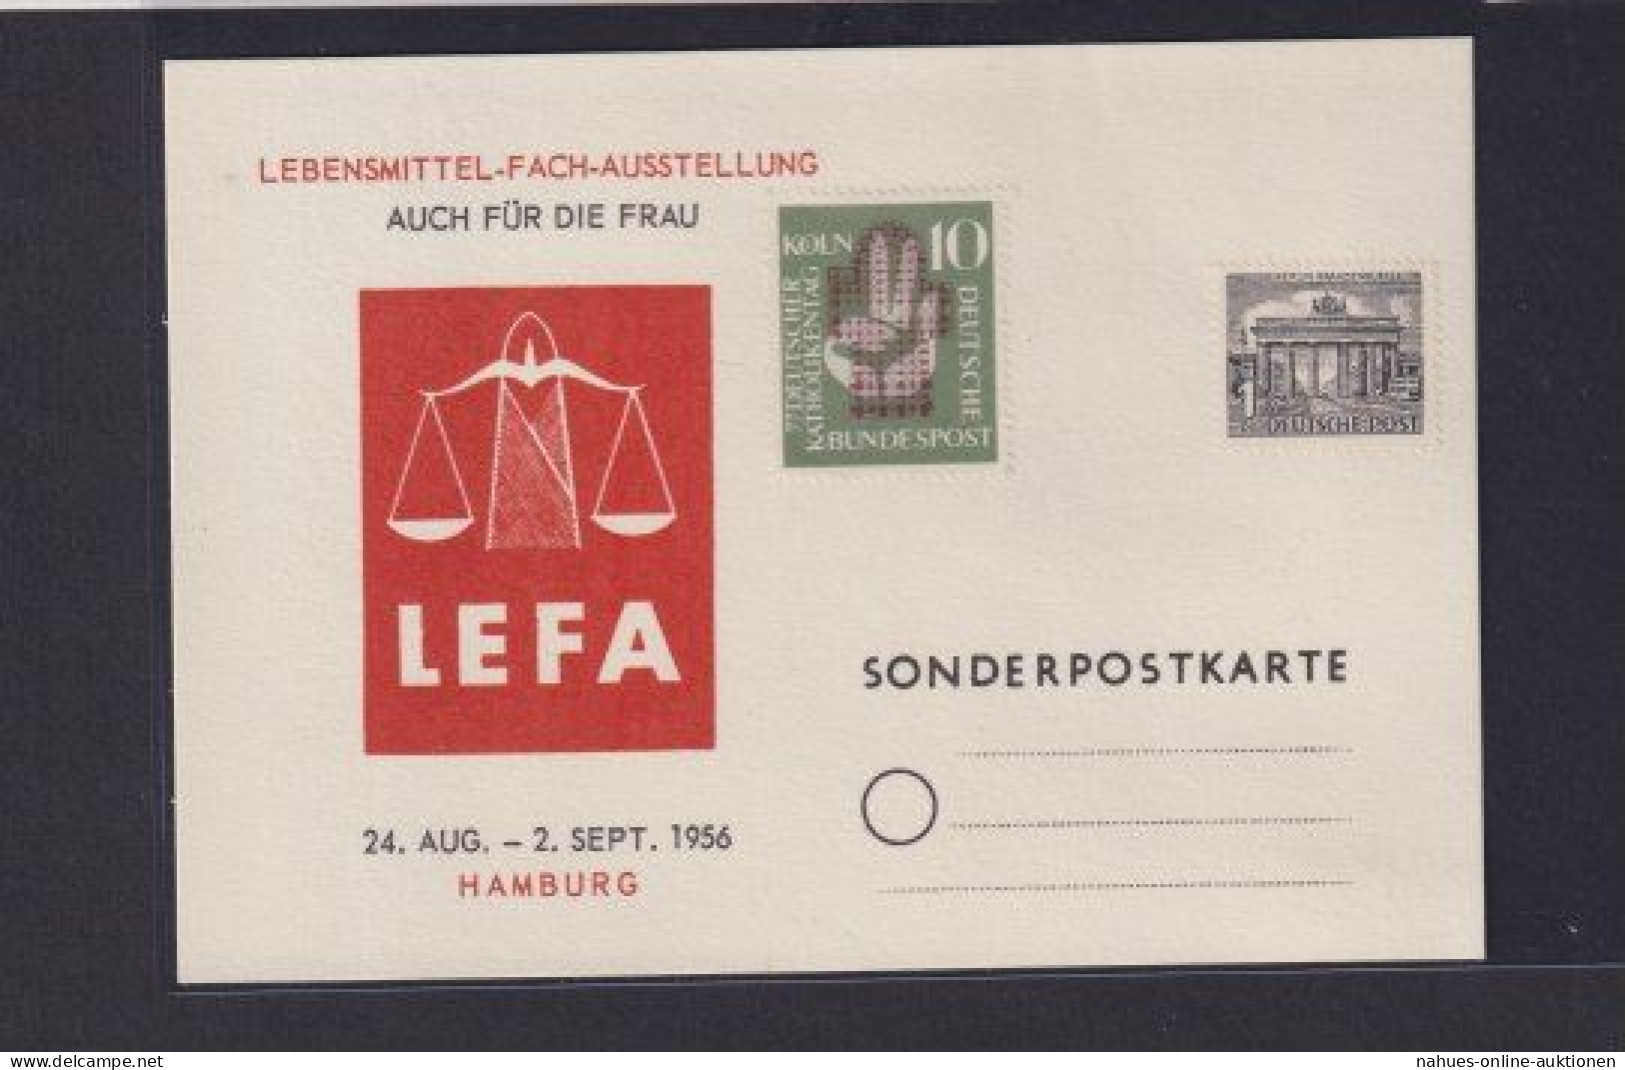 Bund Sonderkarte Hamburg Lebensmittel Fach Ausstellung LEFA 1956 - Briefe U. Dokumente